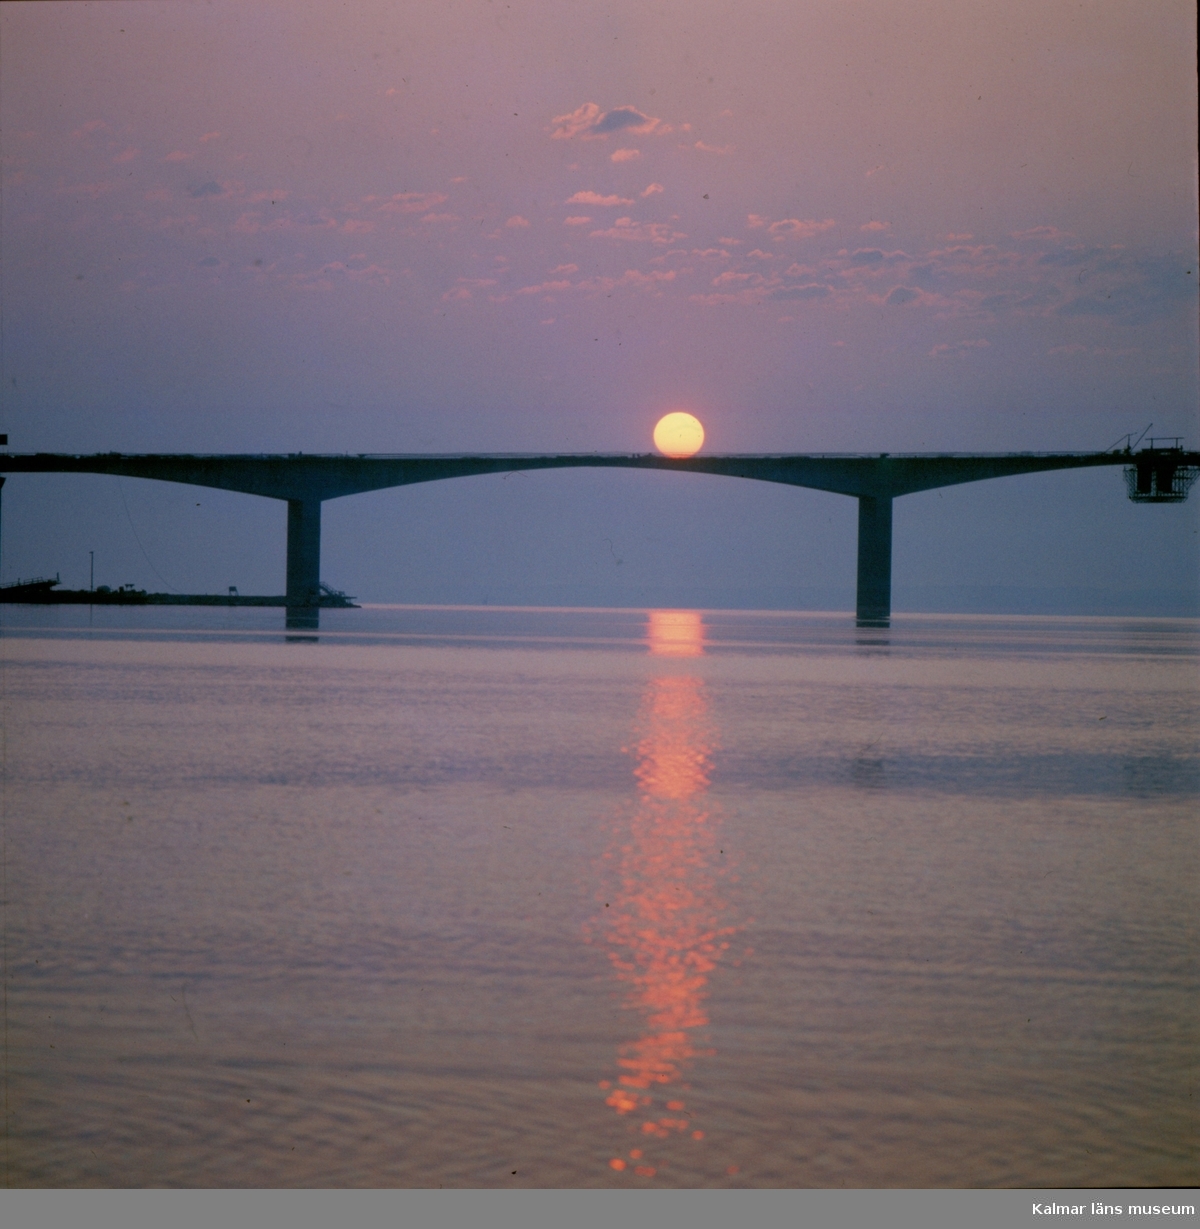 Bron under byggnation i solnedgång.